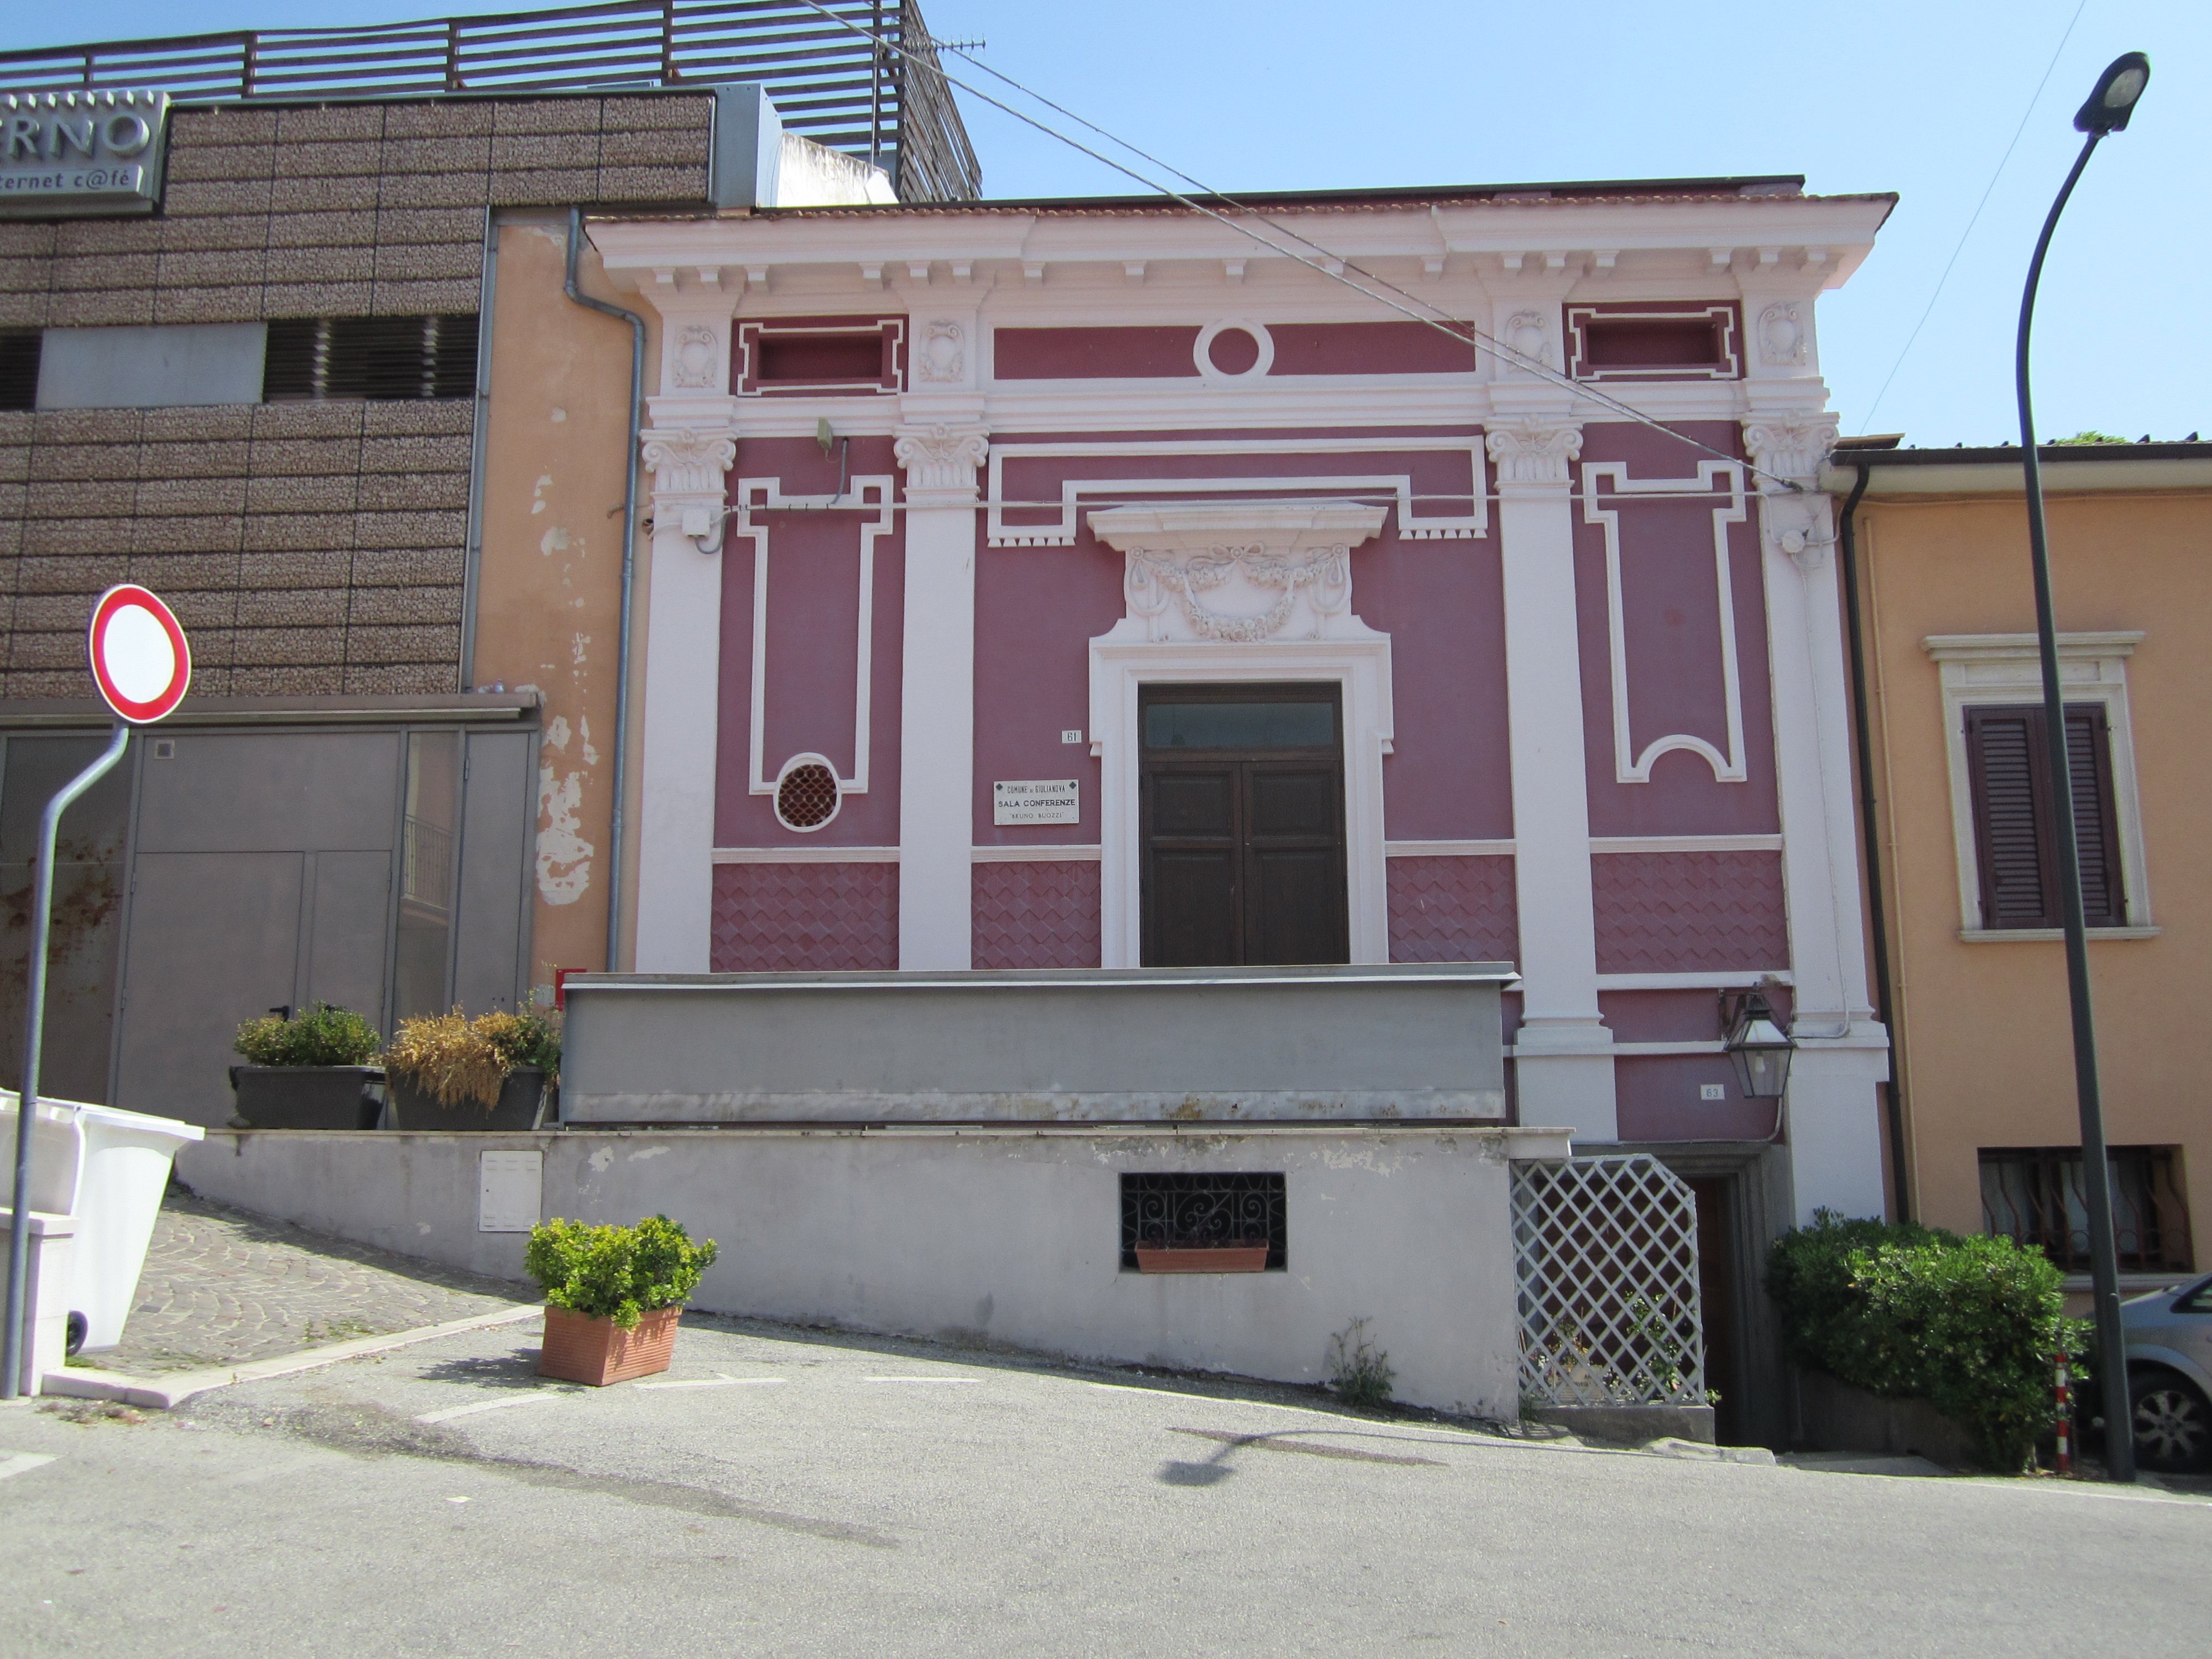 Sala Buozzi (sala per attività culturali) - Giulianova (TE) 